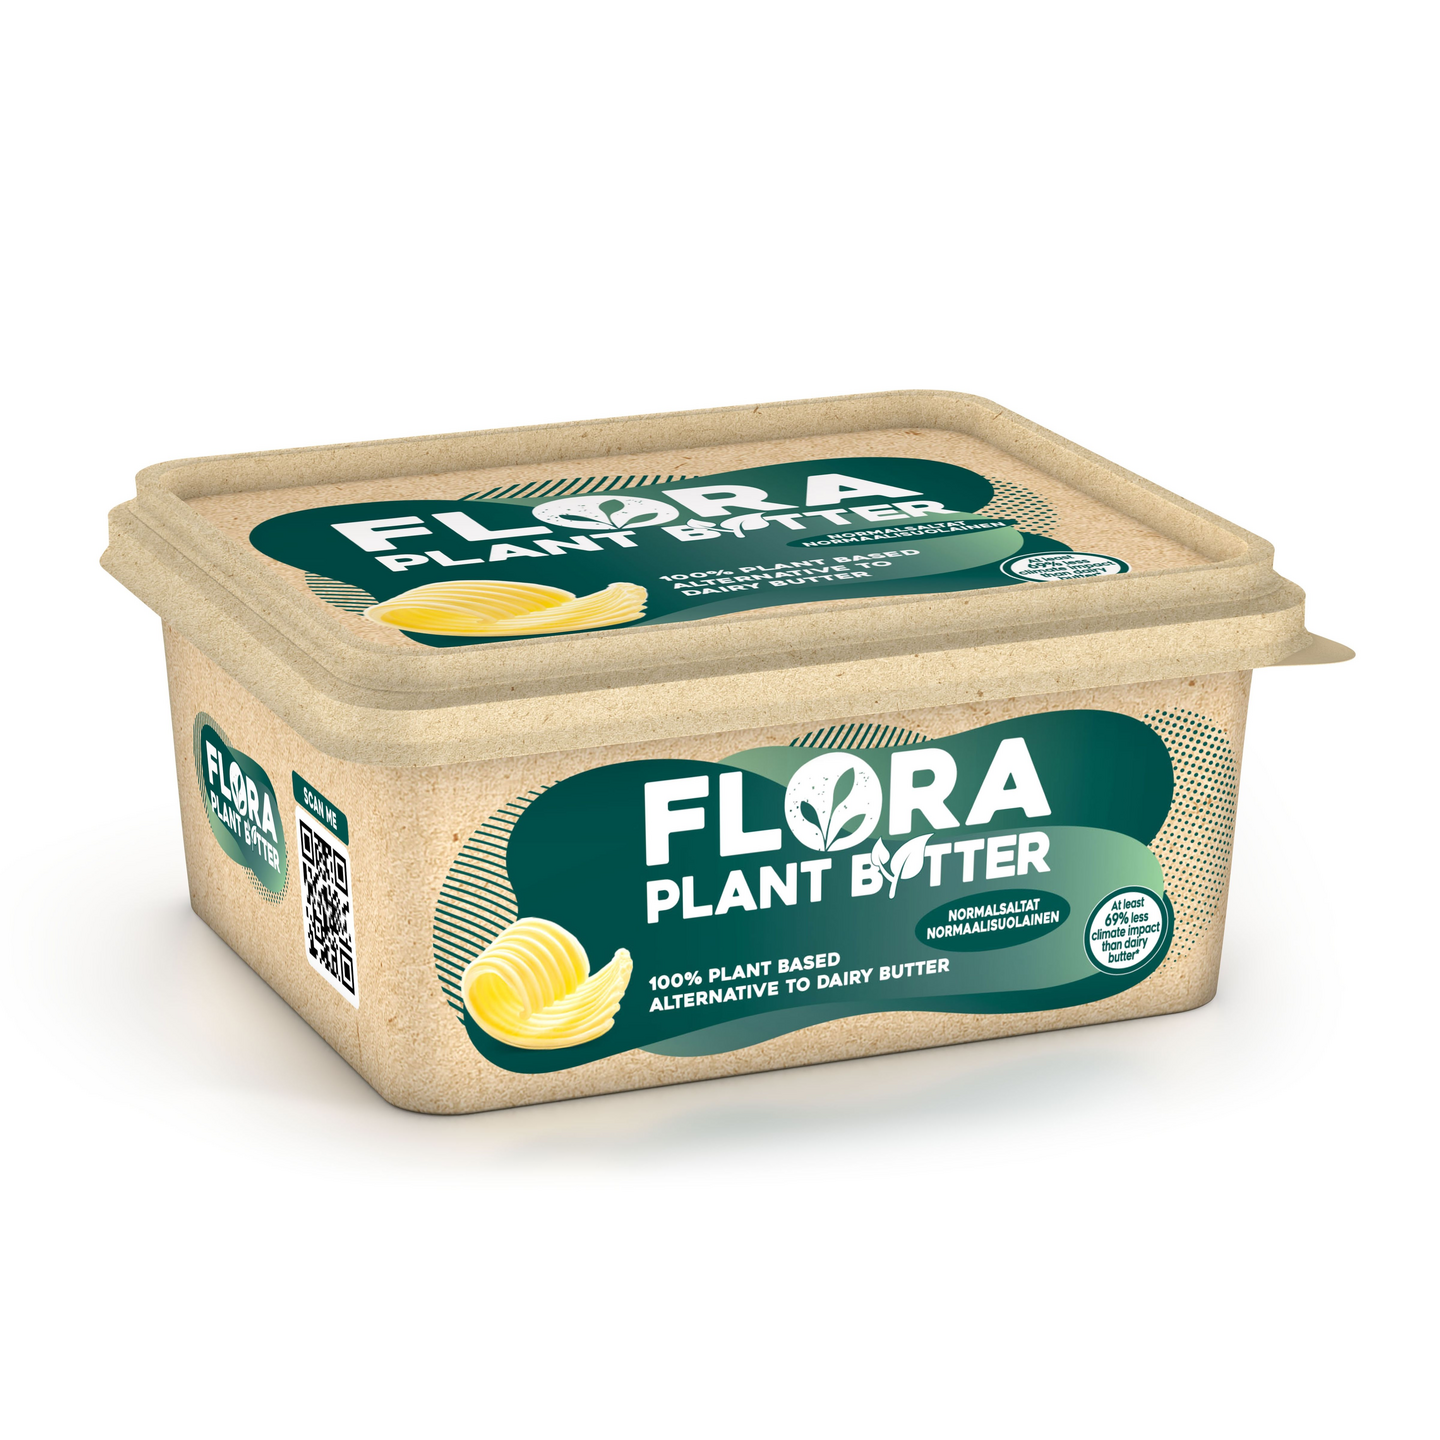 Flora Plant B+tter Normaalisuolainen 600g